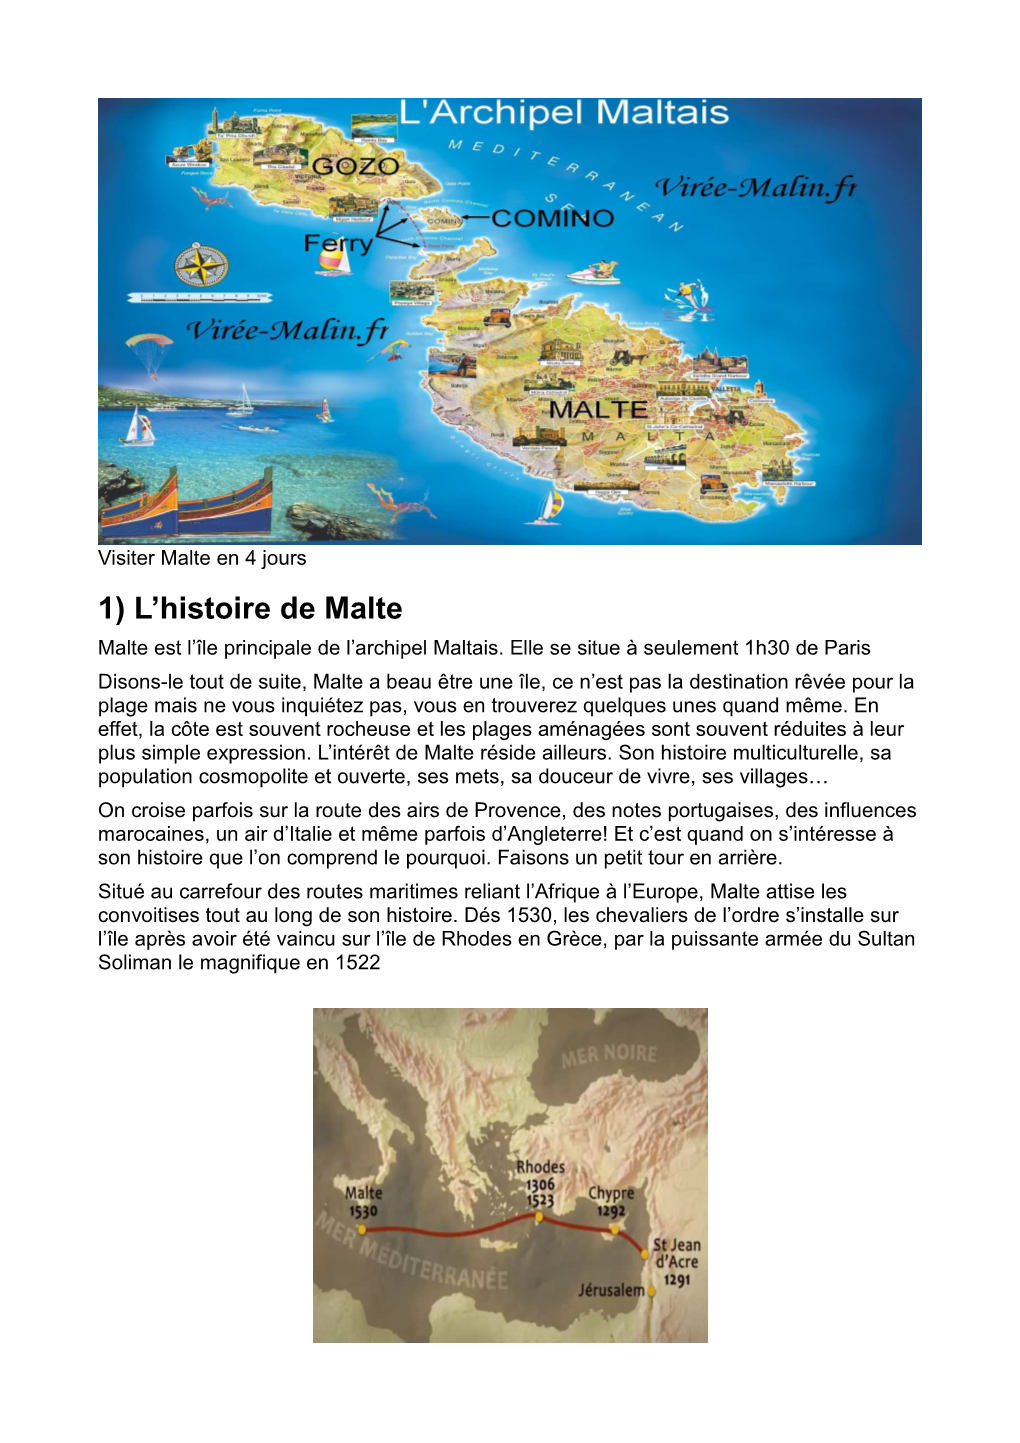 1) L'histoire De Malte